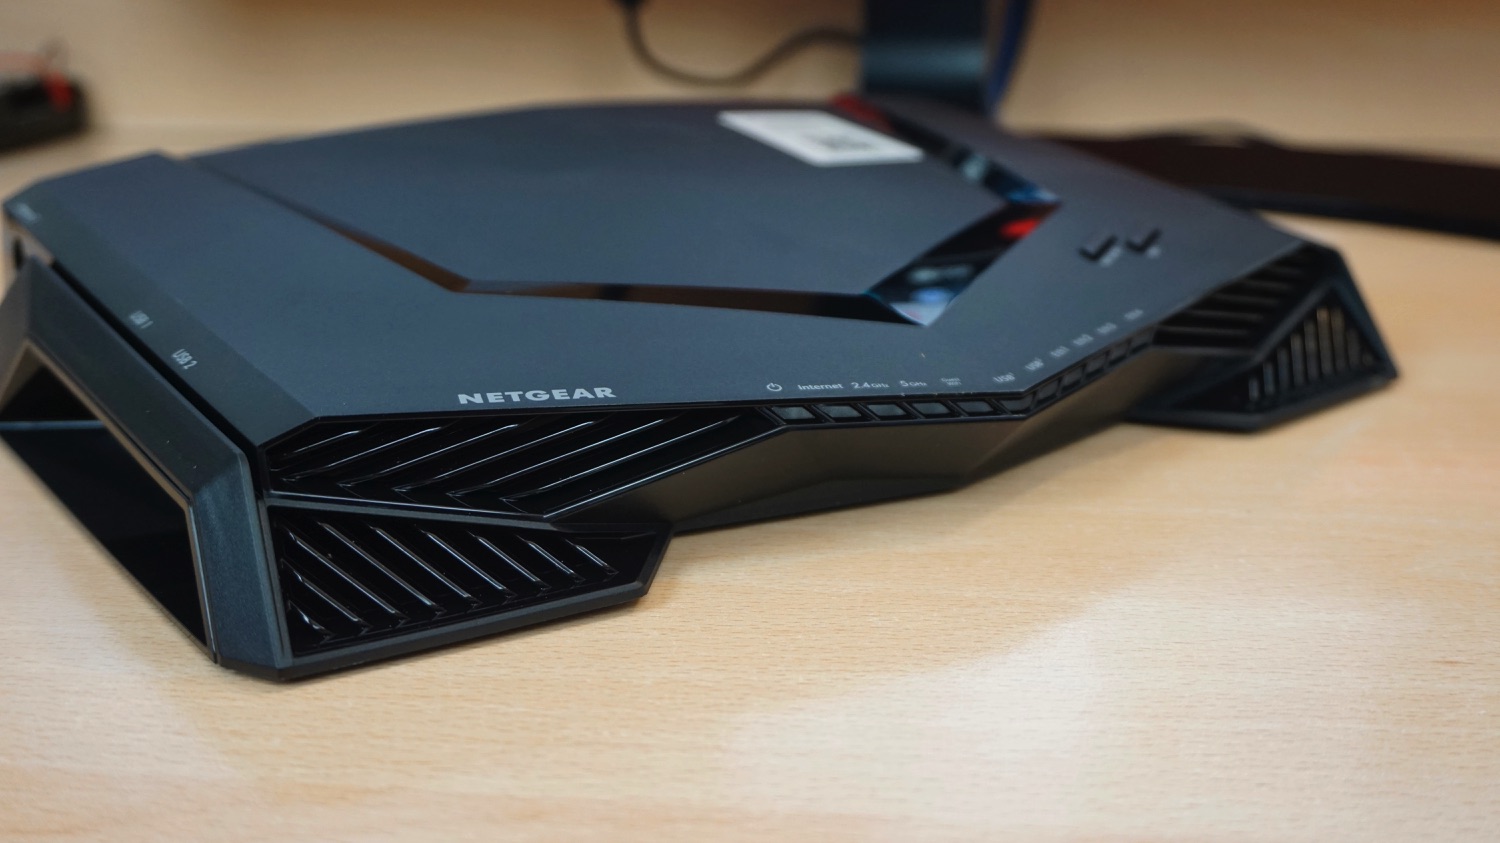 Netgear XR500 Hightawk Pro Gaming Router